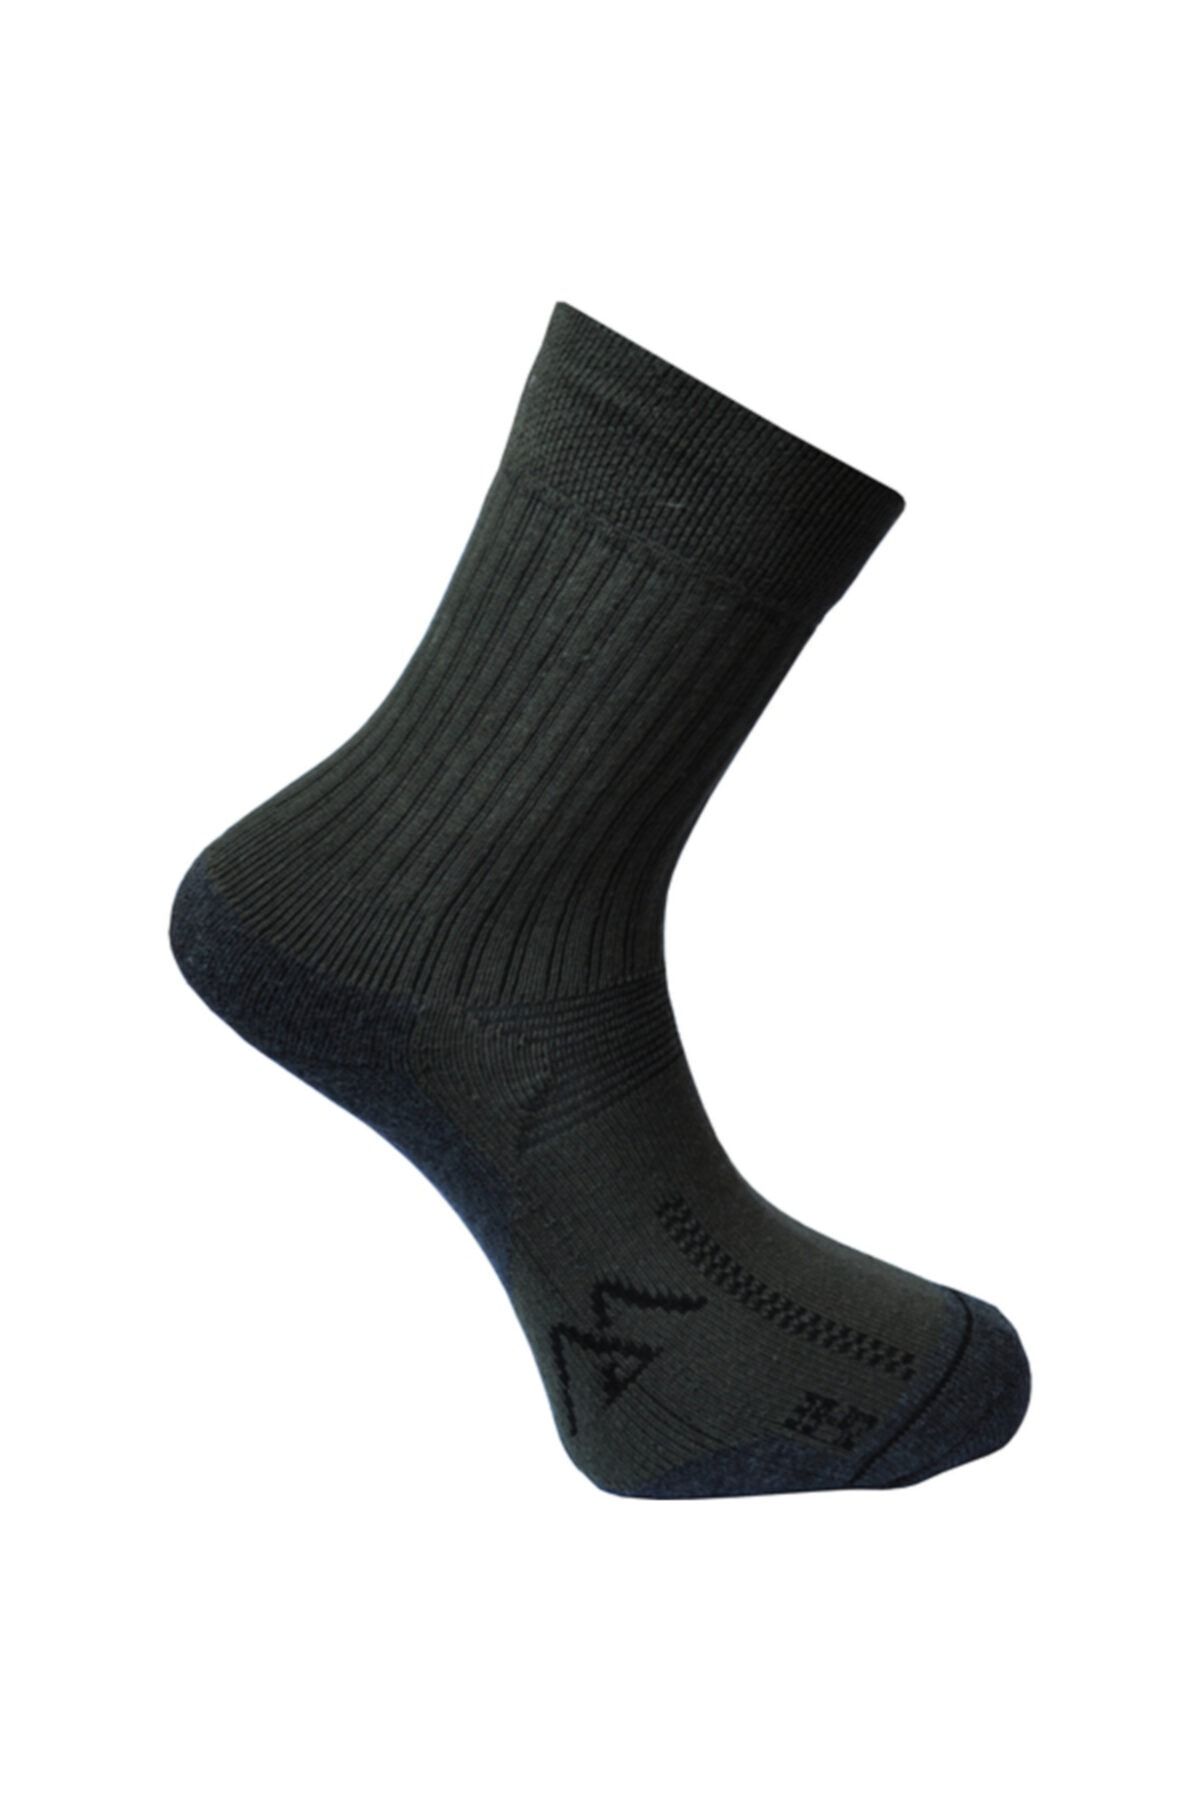 Makalu Unisex Yeşil Ultra Comfort Çorap 43  46